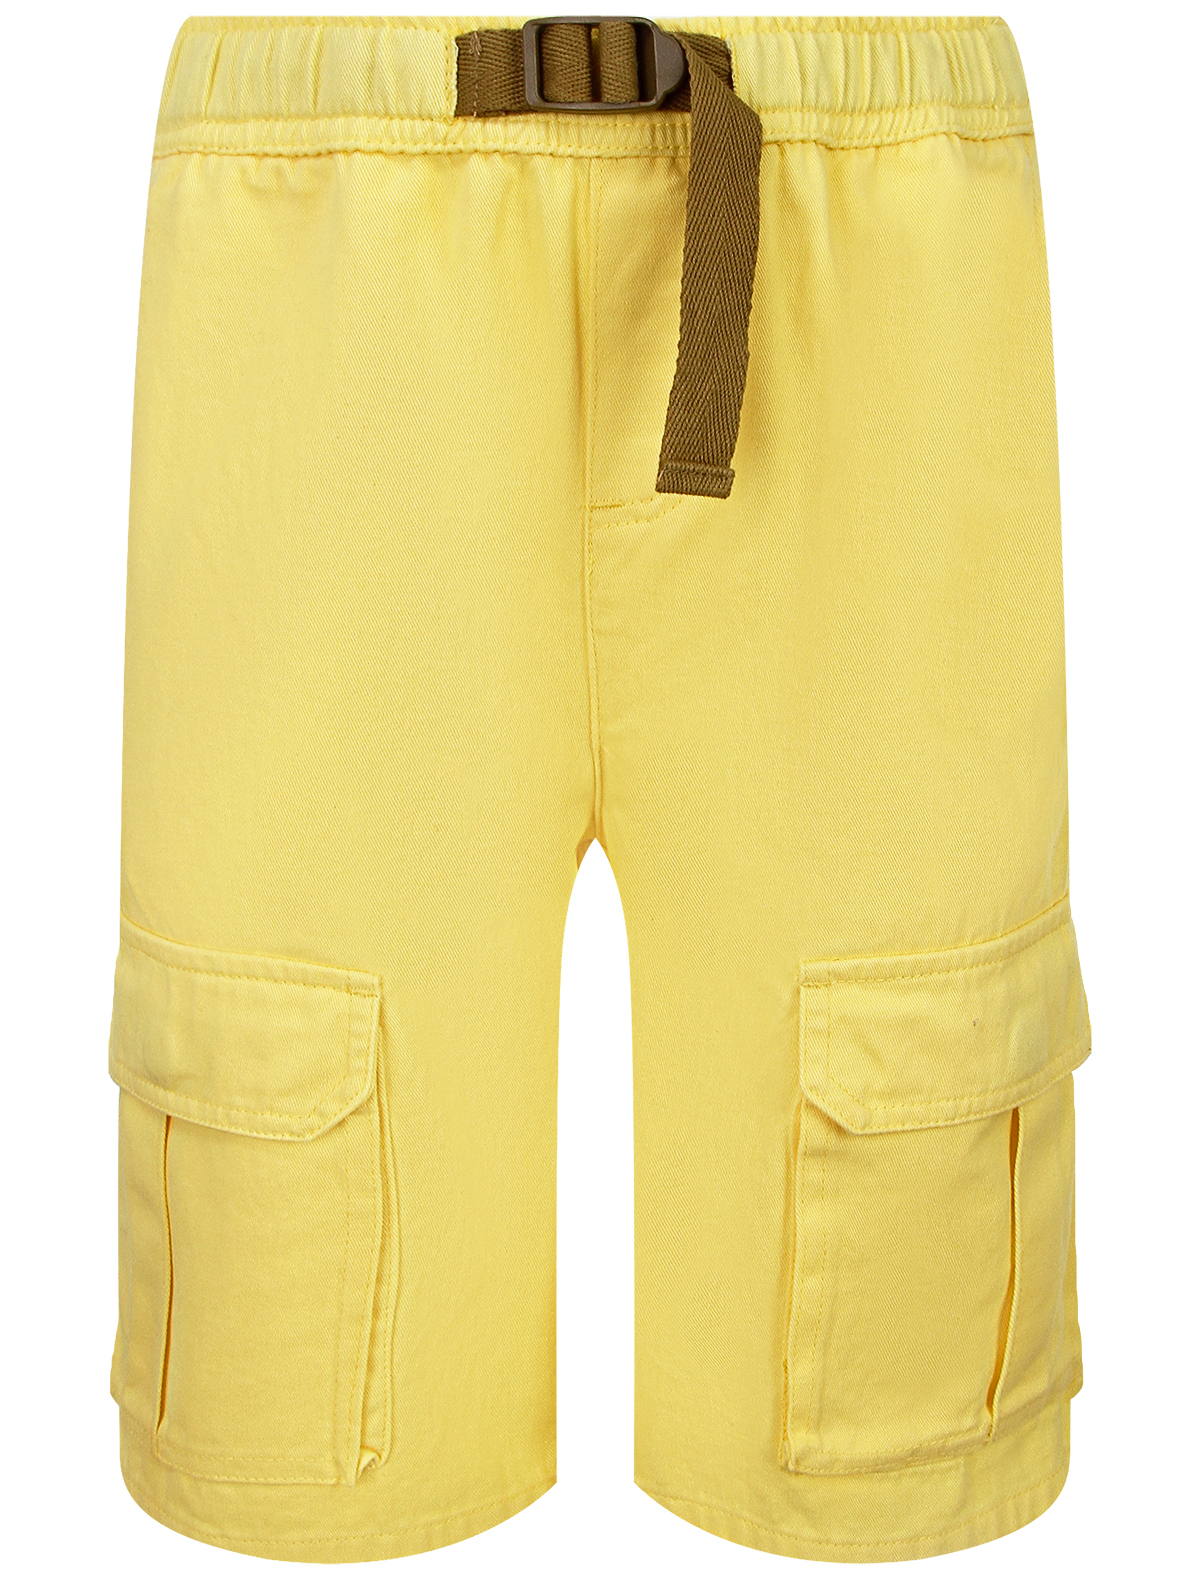 шорты stella mccartney для мальчика, желтые